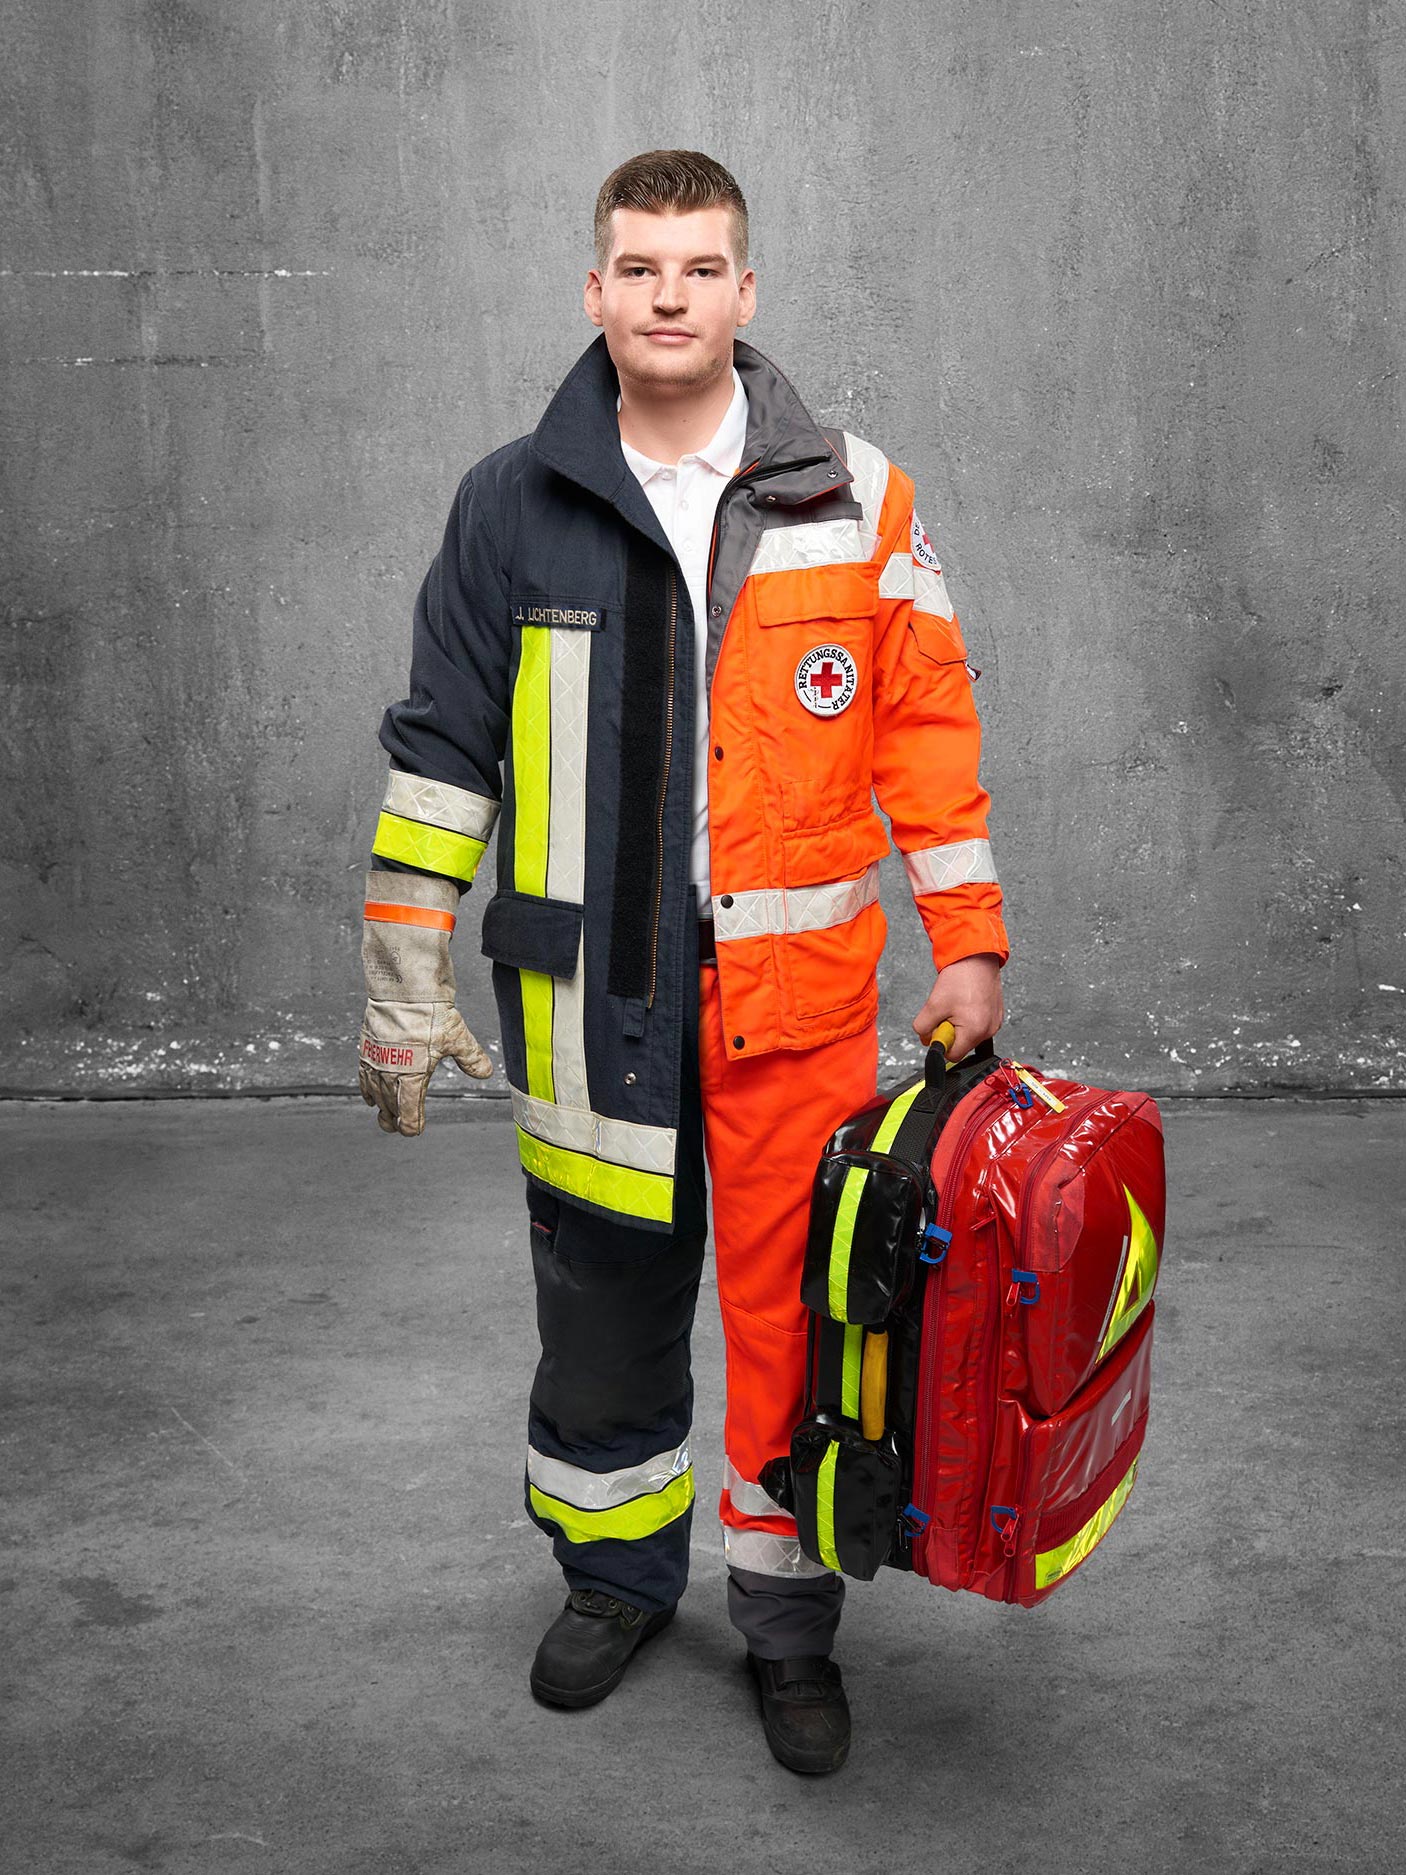 FeuerwehrMenschen Rettungsassistent ist Feuerwehrmann